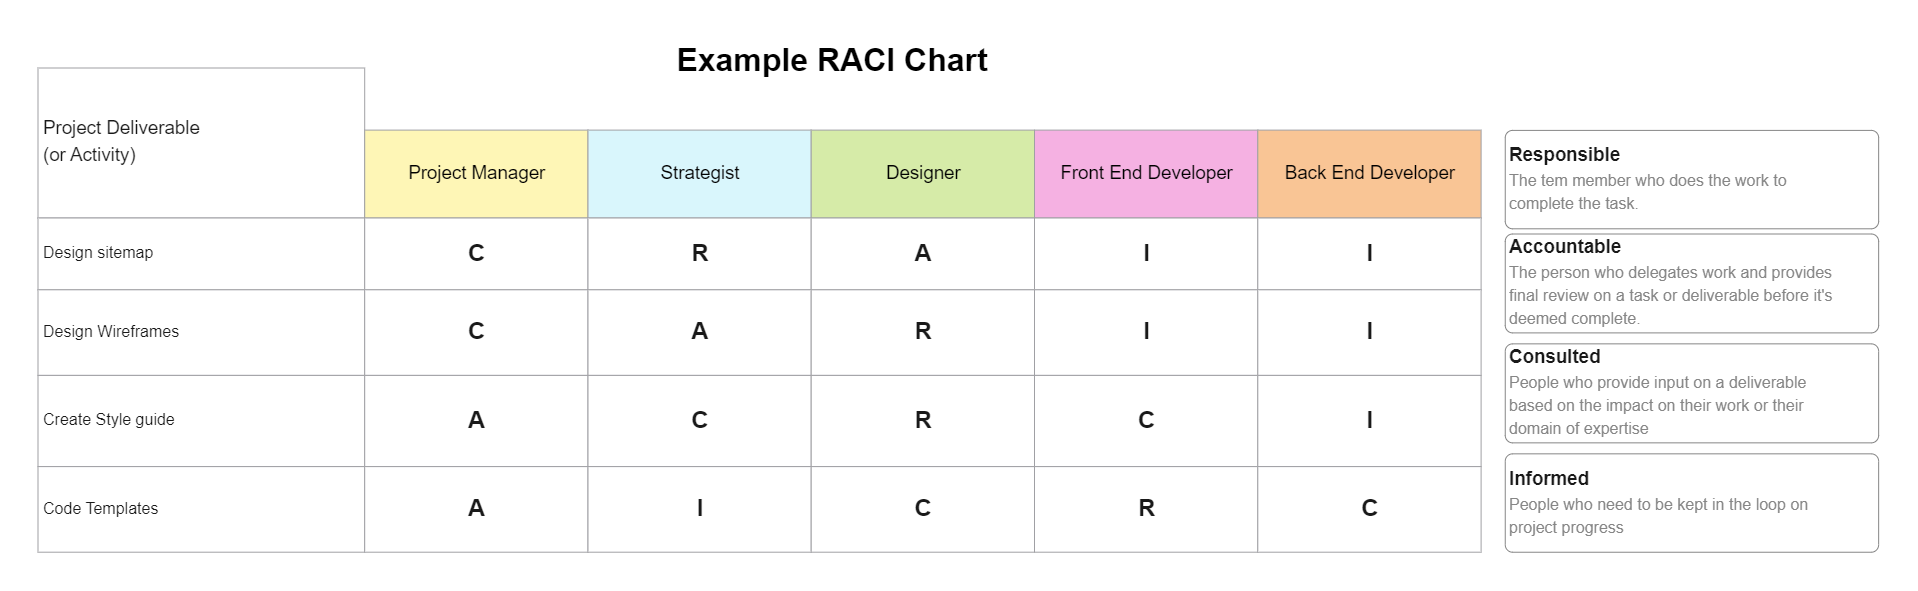 RACI Chart Example